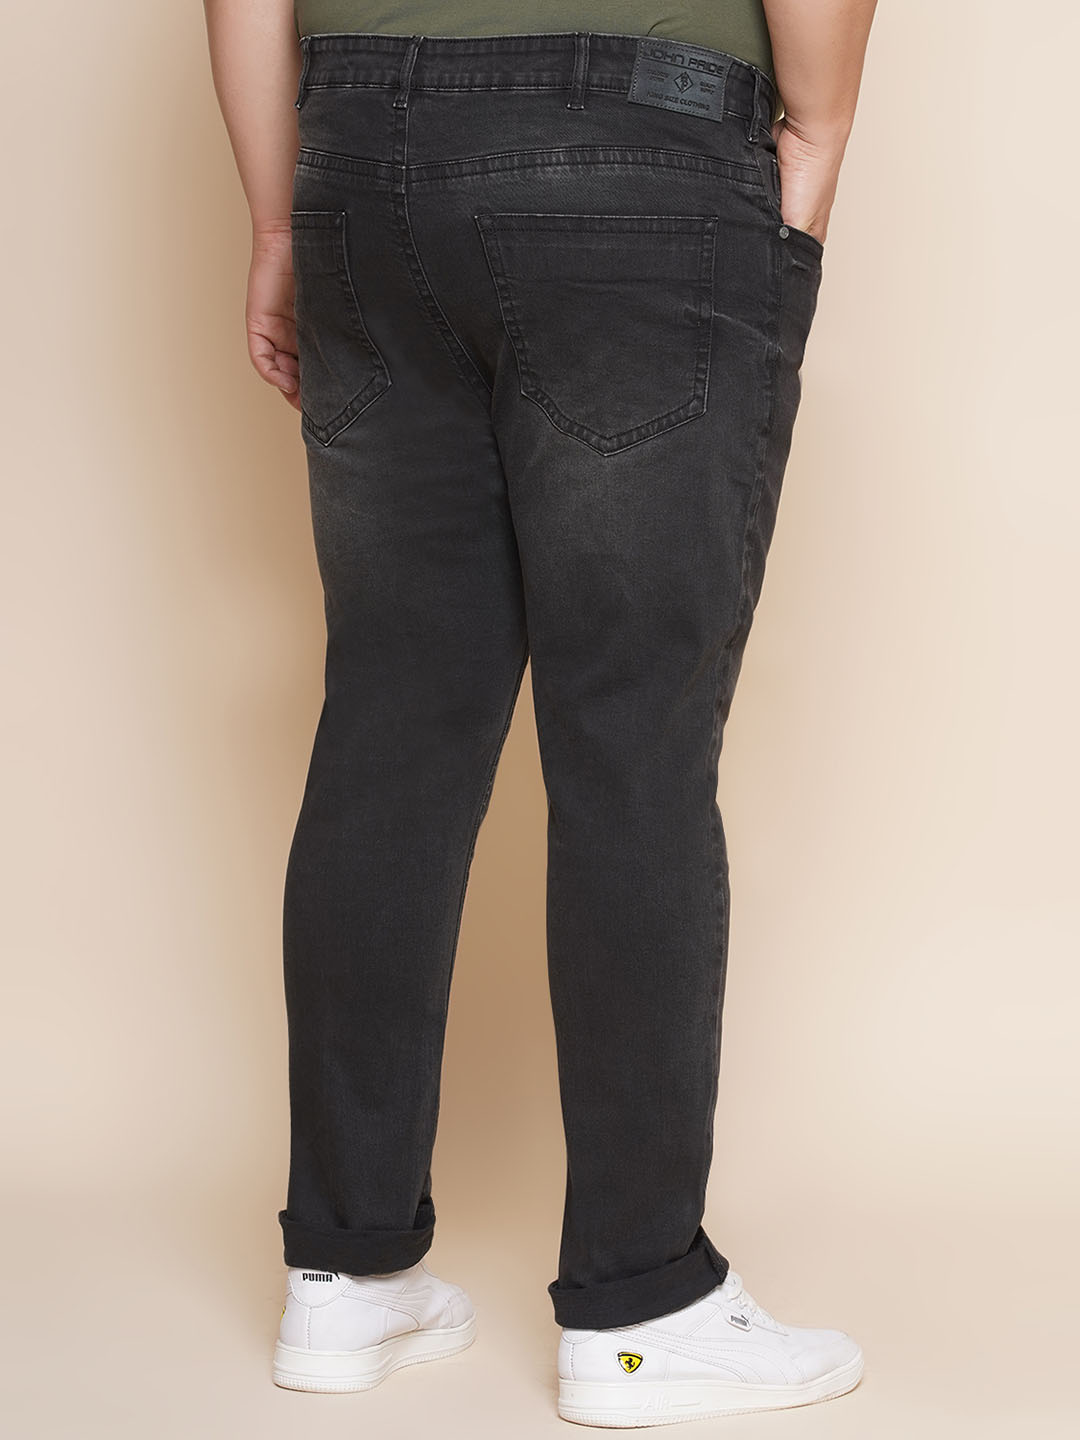 bottomwear/jeans/JPJ12351/jpj12351-5.jpg